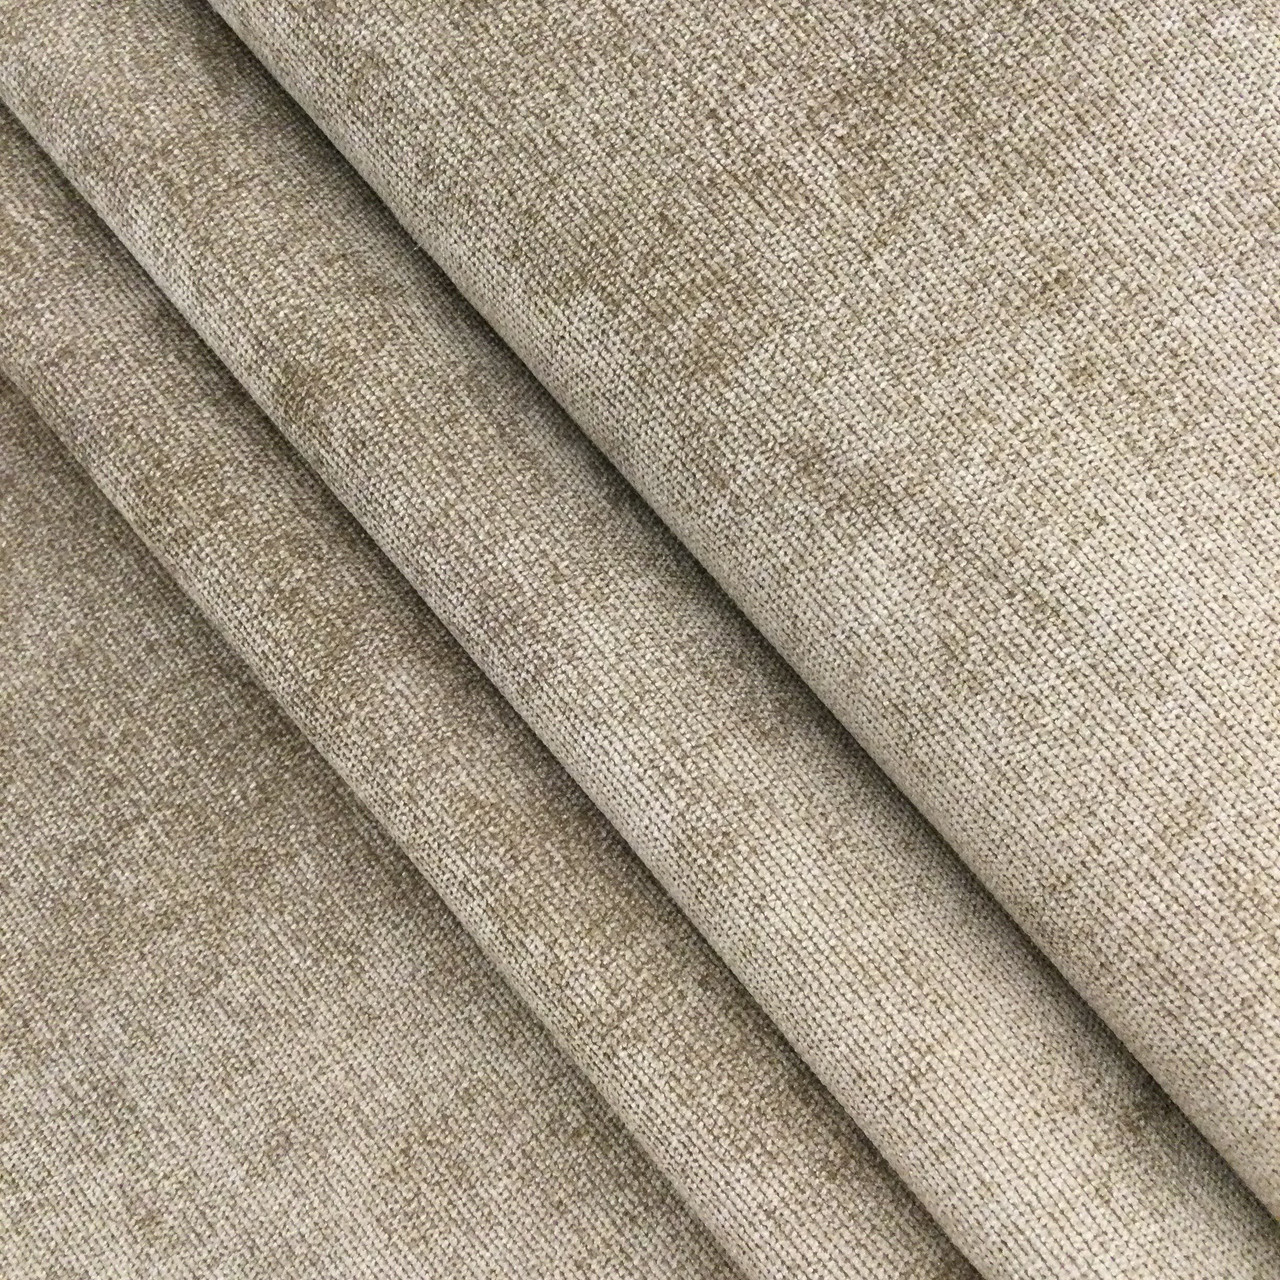 Burlap Fabric, Microsuede Fabric